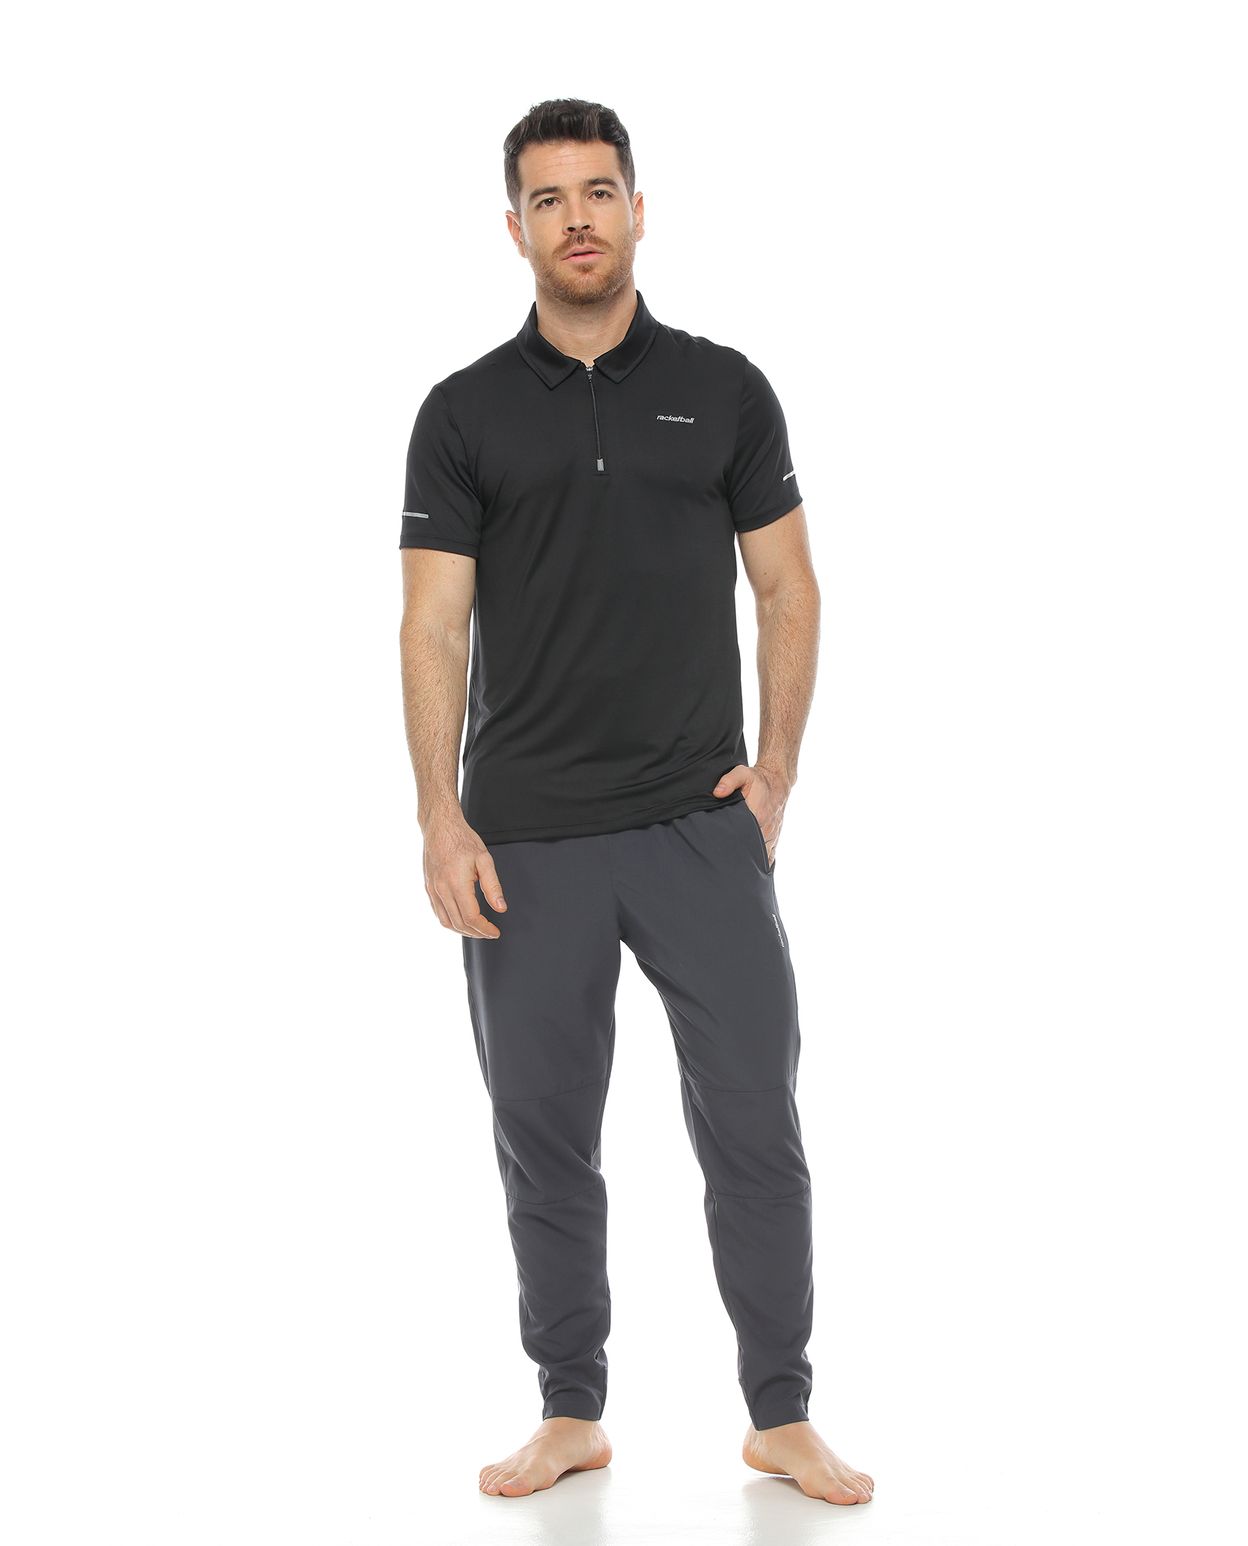 modelo con Camiseta estilo Polo negra y pantalon deportivo para Hombre parte frontal